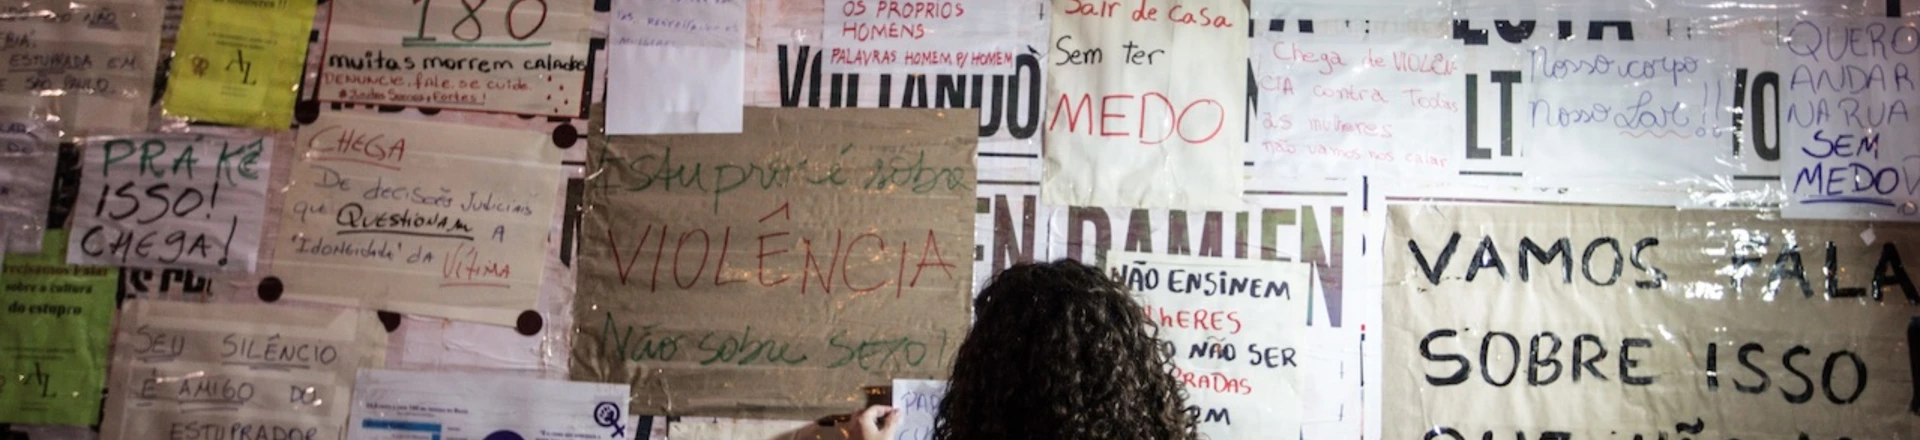 Uma garota cola cartazes contra estupro em tapume no MASP, na avenida Paulista. São Paulo, maio de 2016.